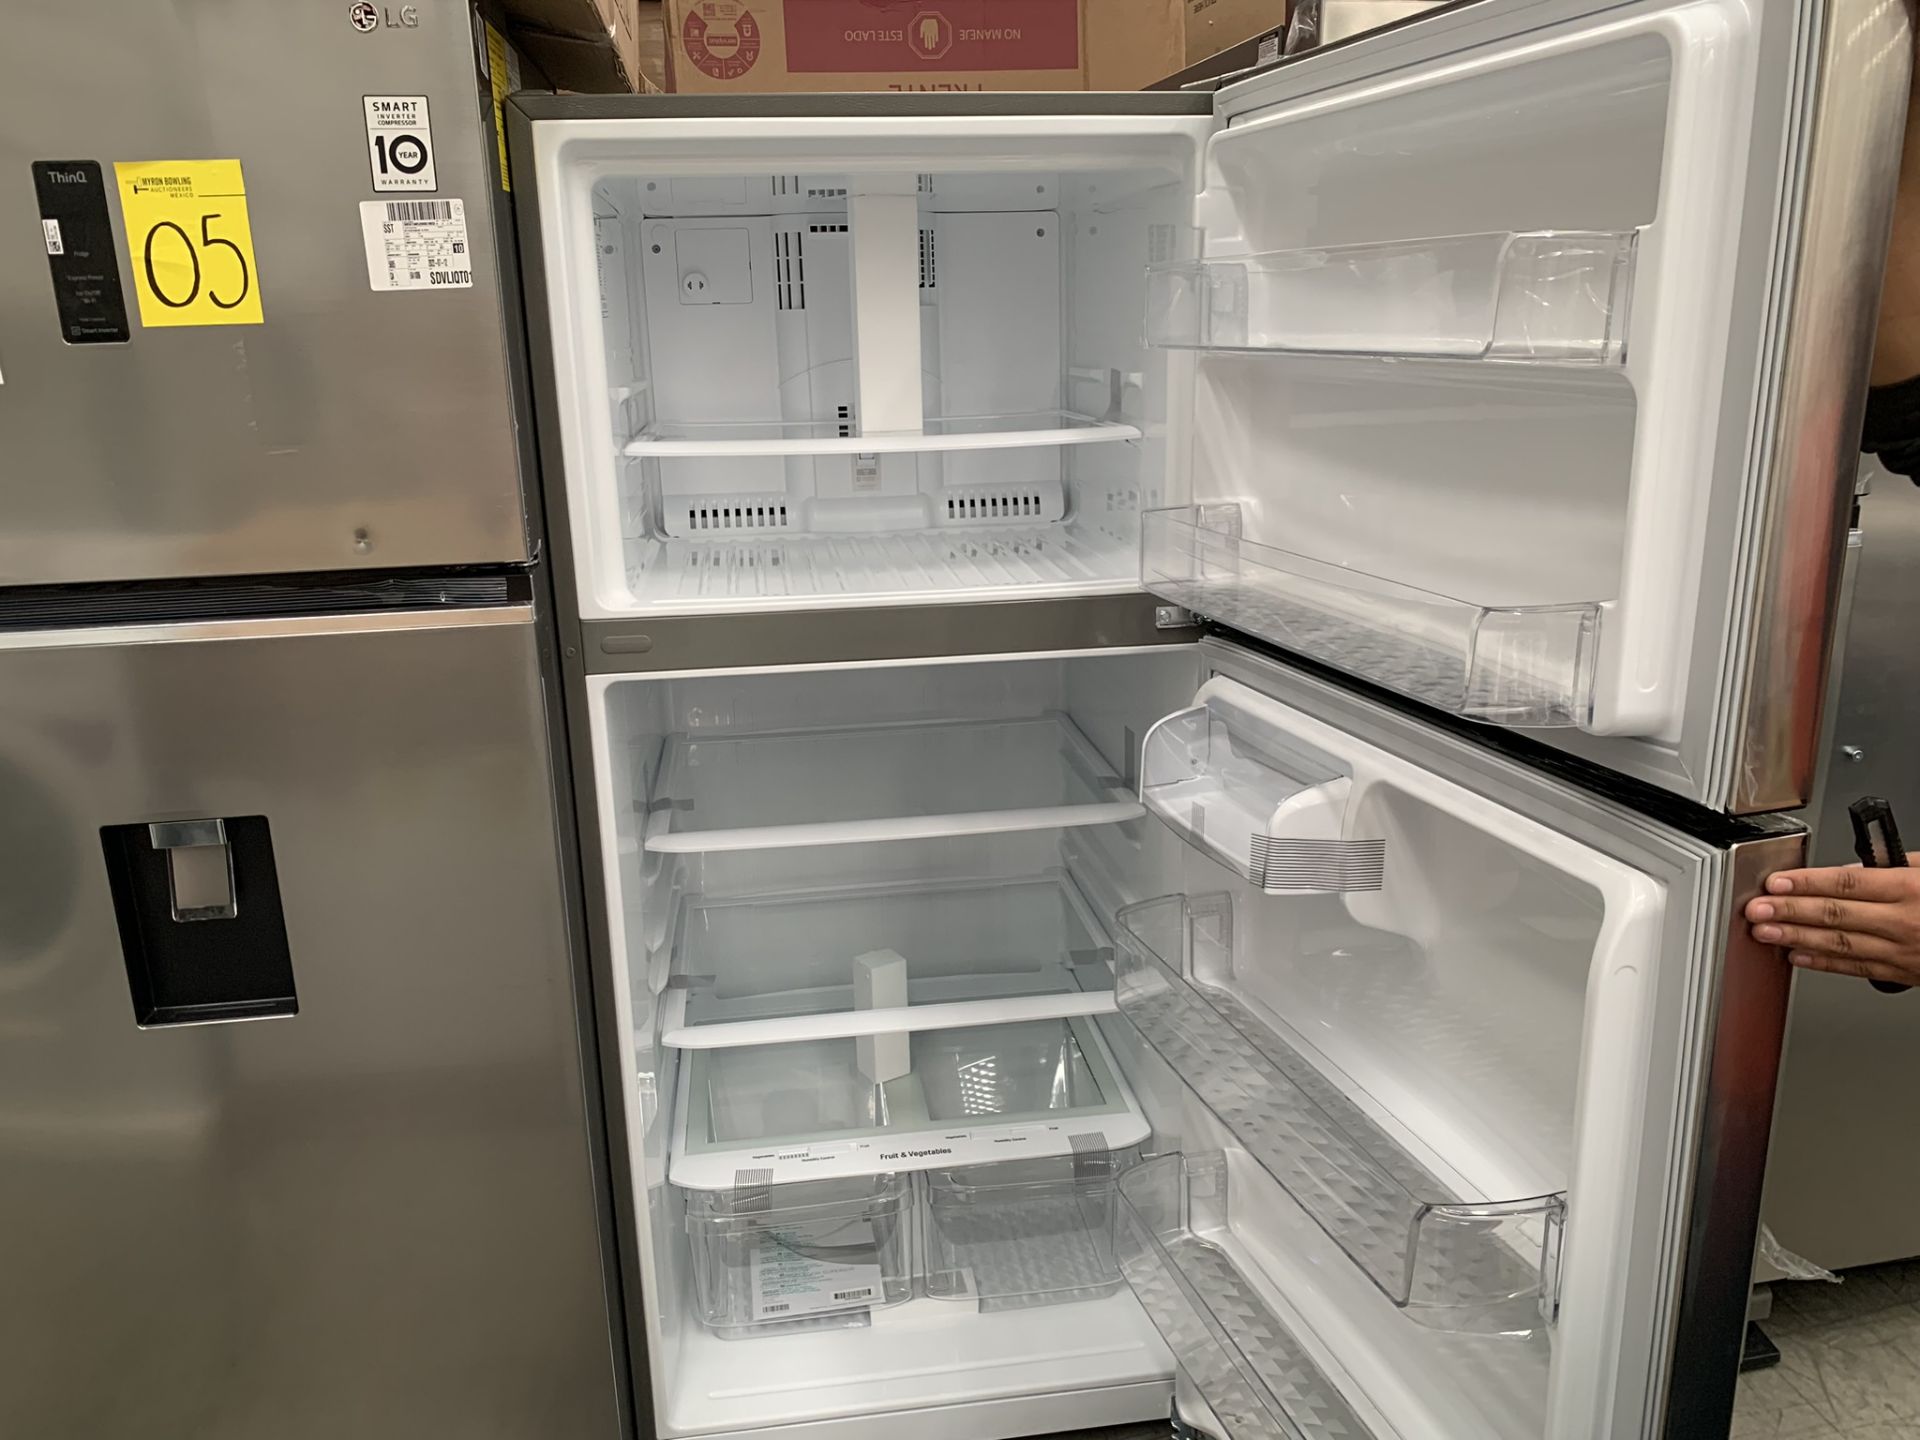 Lote conformado por un refrigerador + Frigobar: 1 Refrigerador Marca LG, Modelo LT57BPSX, No de ser - Image 14 of 17